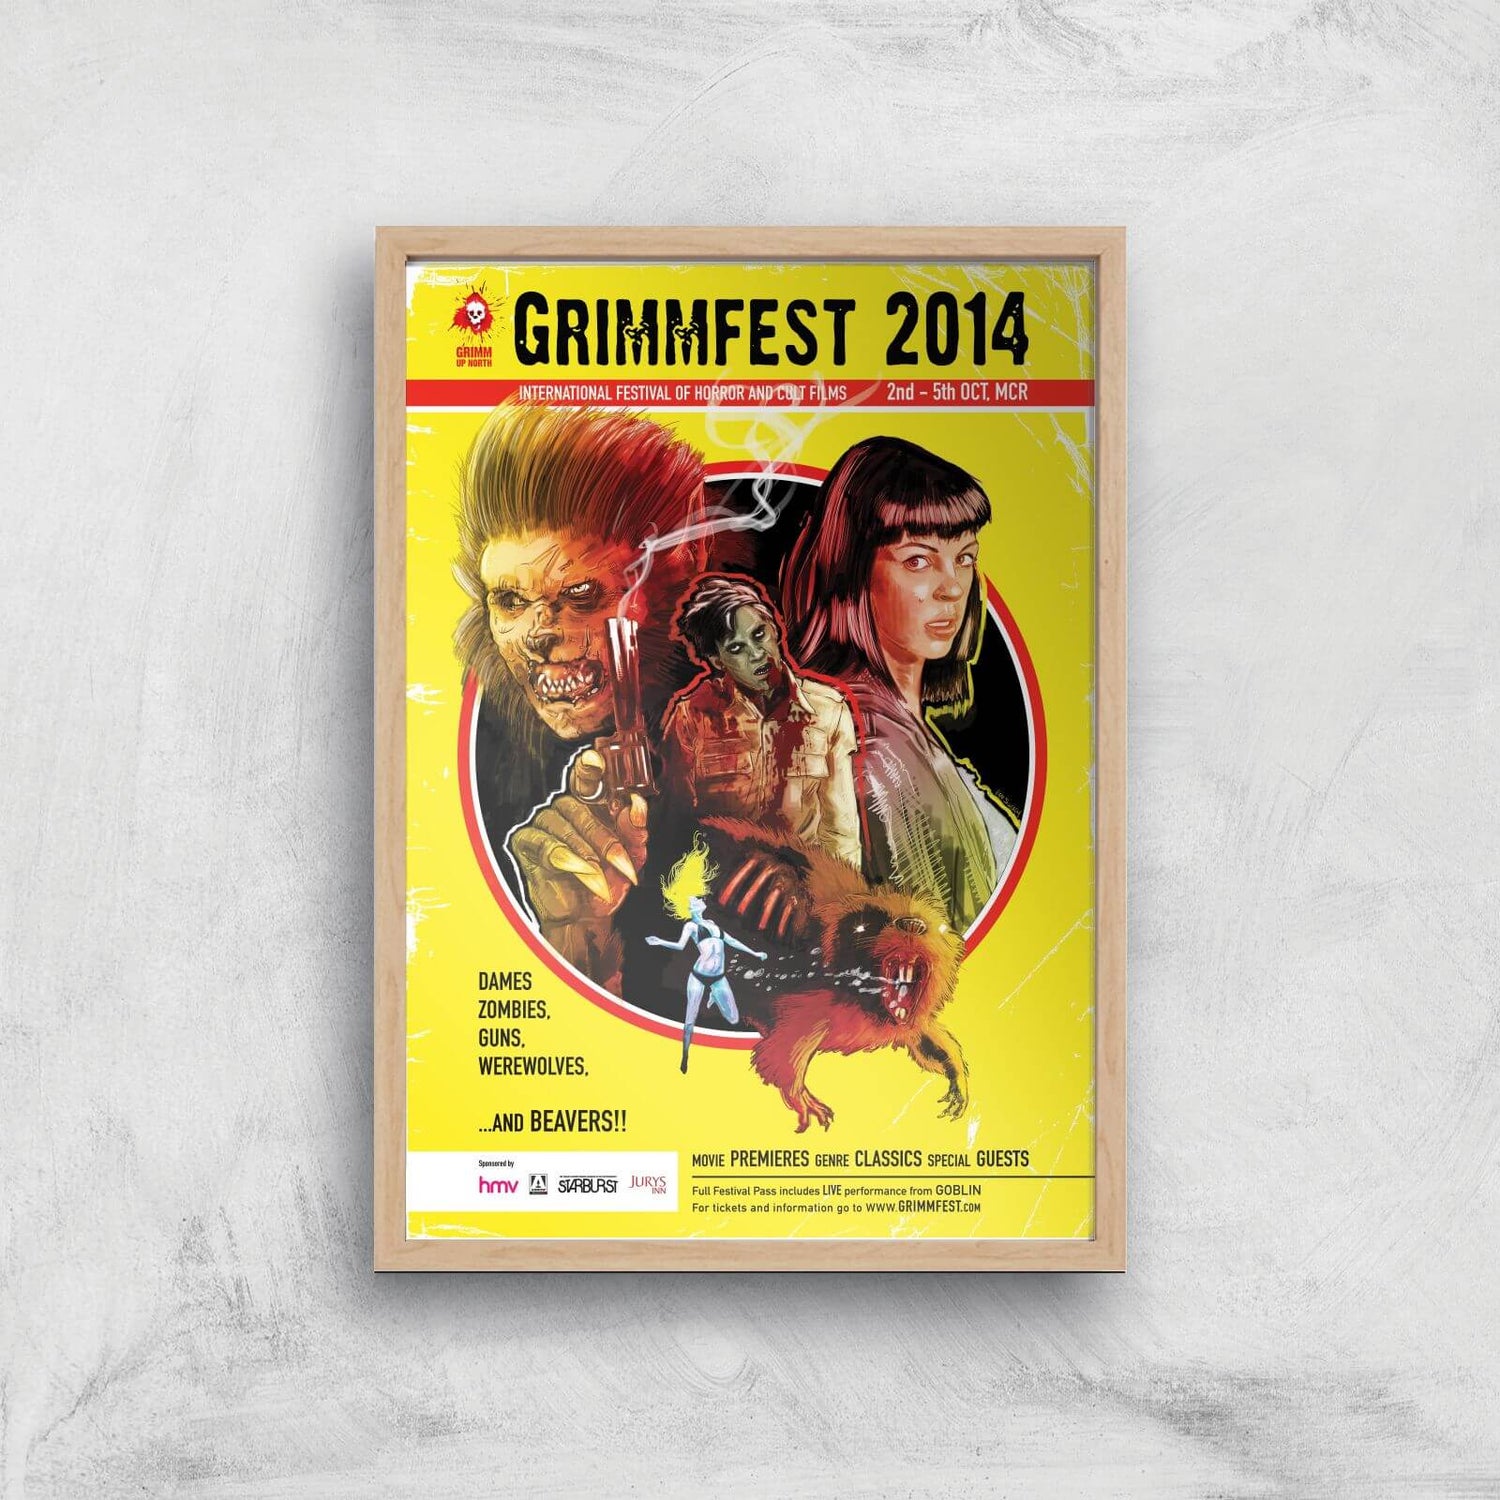 Grimmfest 2014 Giclée Art Print - A4 - Wooden Frame